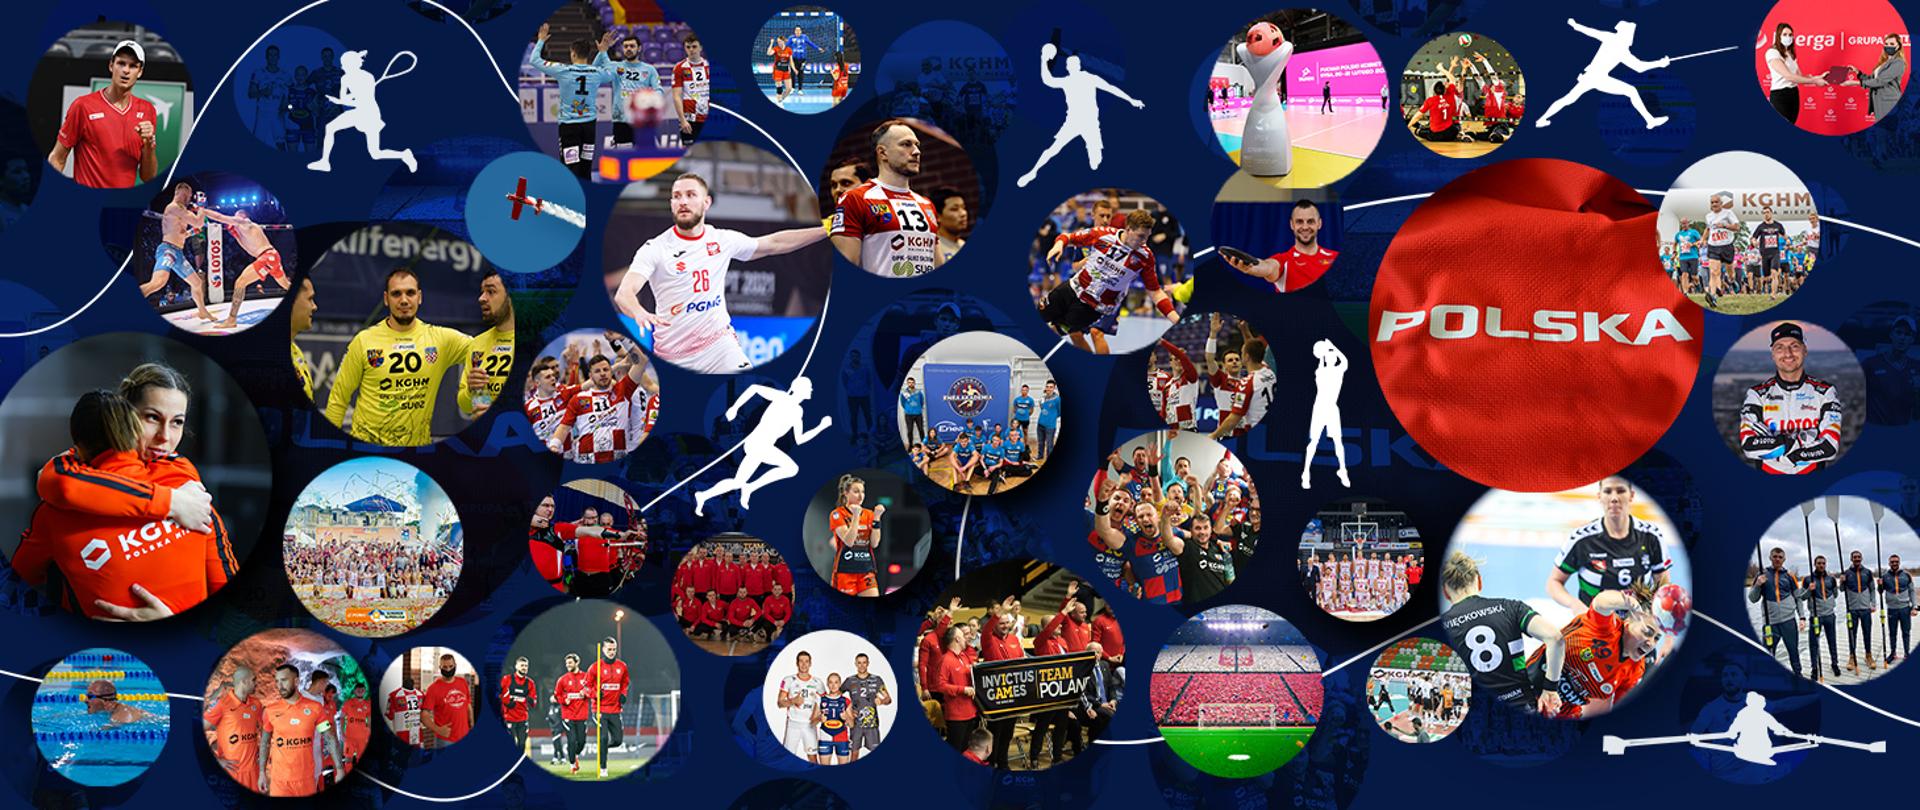 Grafika z wizerunkami sportowców. Niebieskie tło. W kołach wizerunki sportowców różnych dyscyplin sportowych.